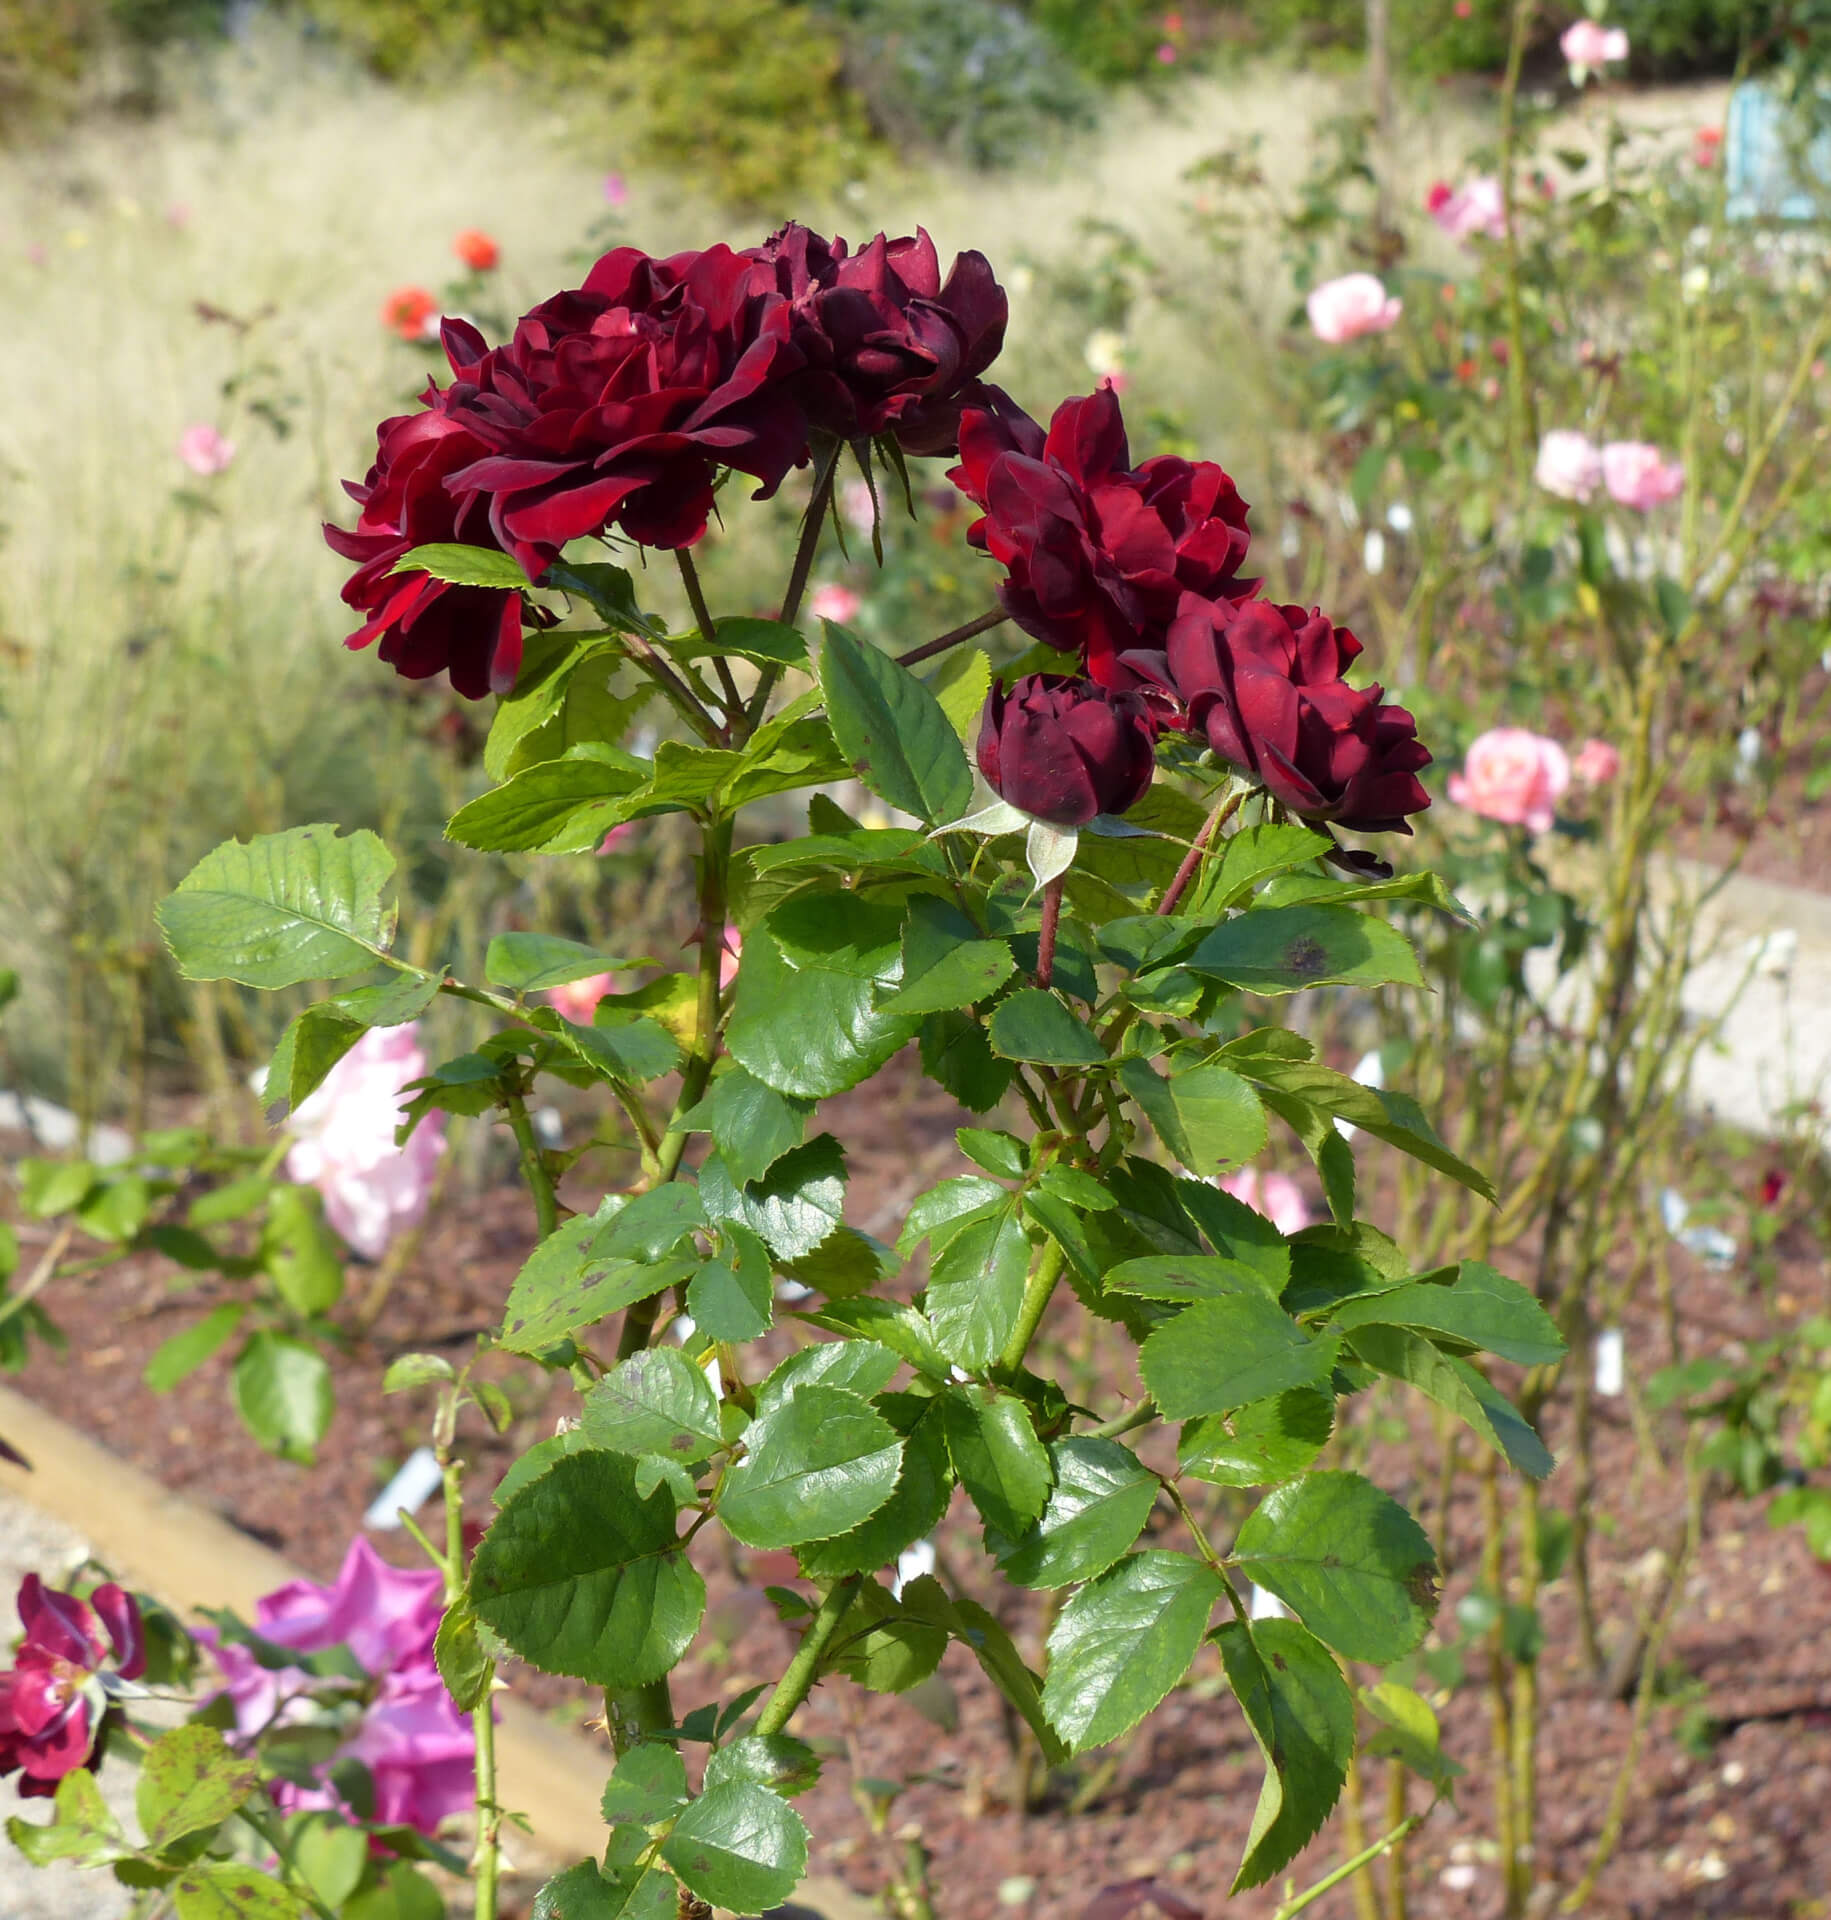 Маликорн (Malicorne) роза